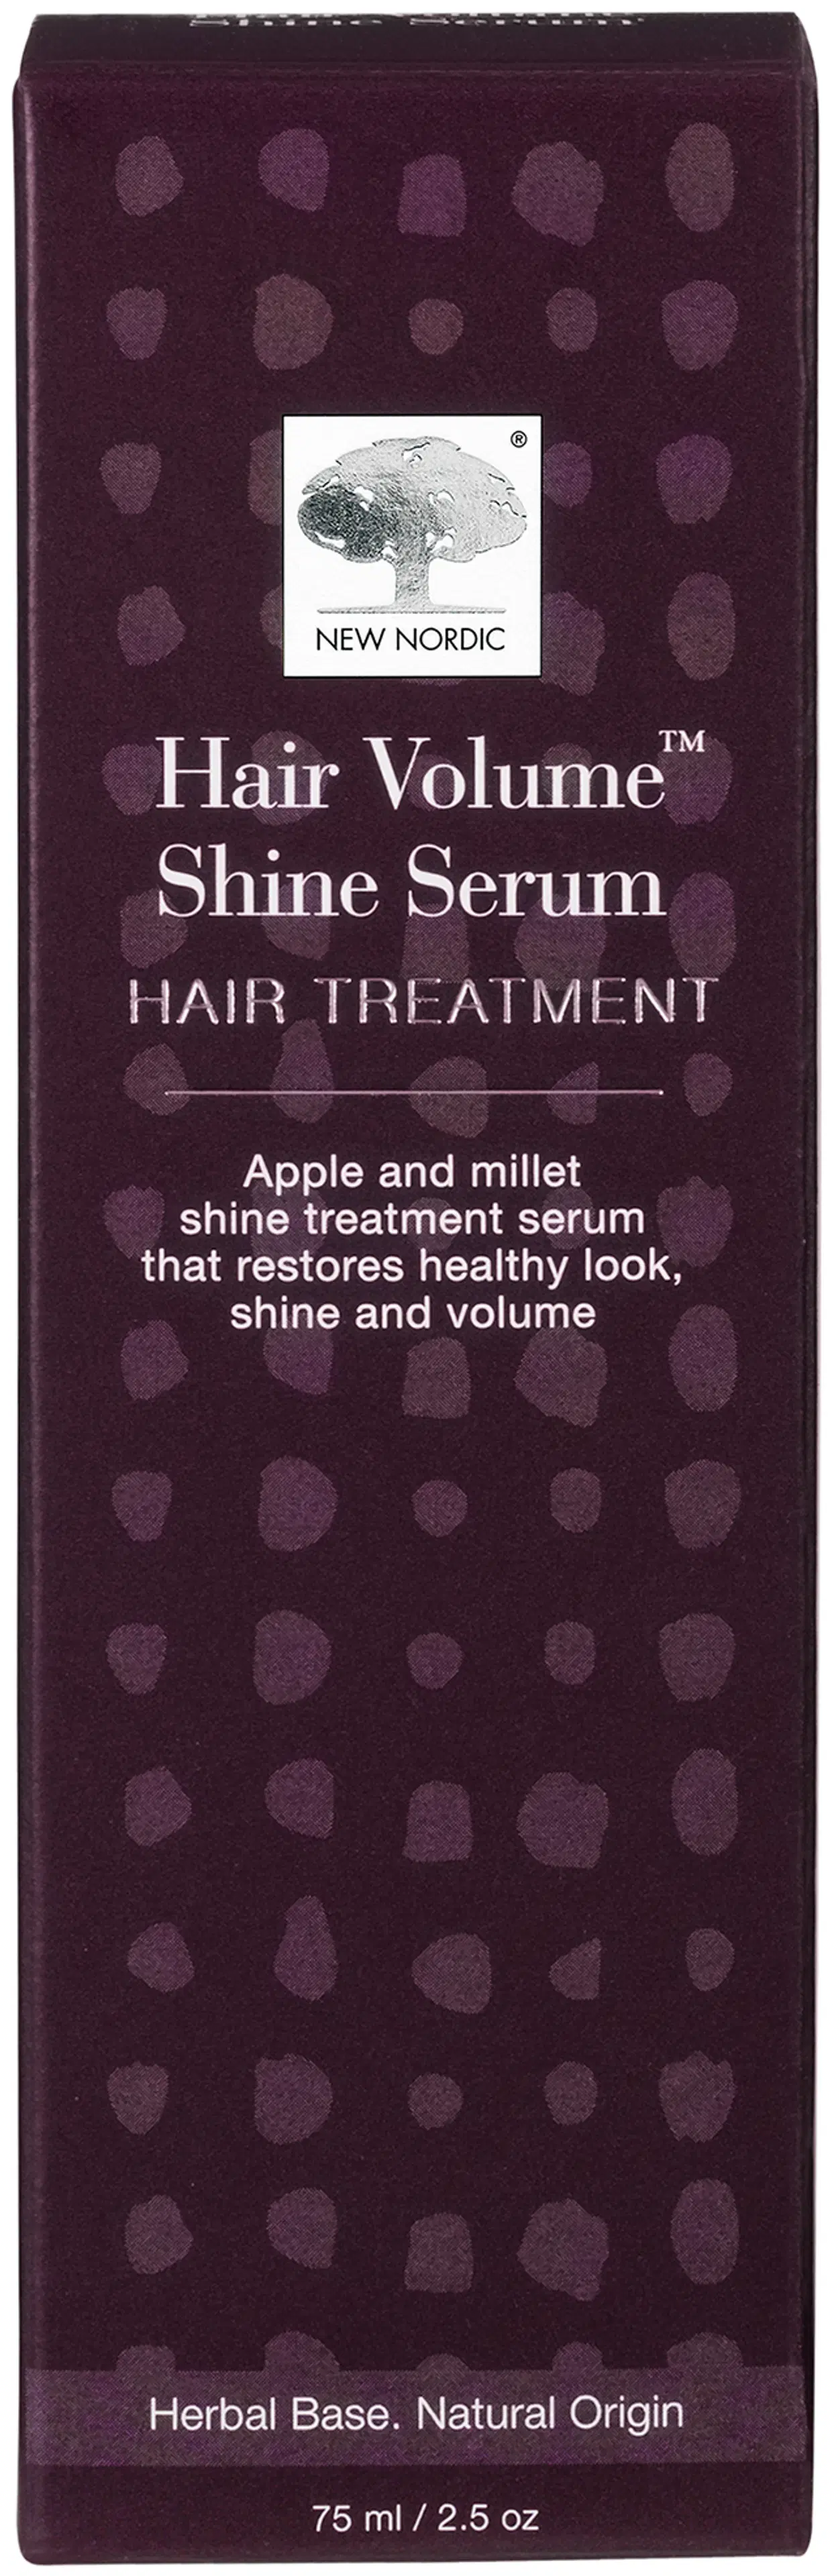 New Nordic Hair Volume™ Shine Serum hiusseerumi 75 ml